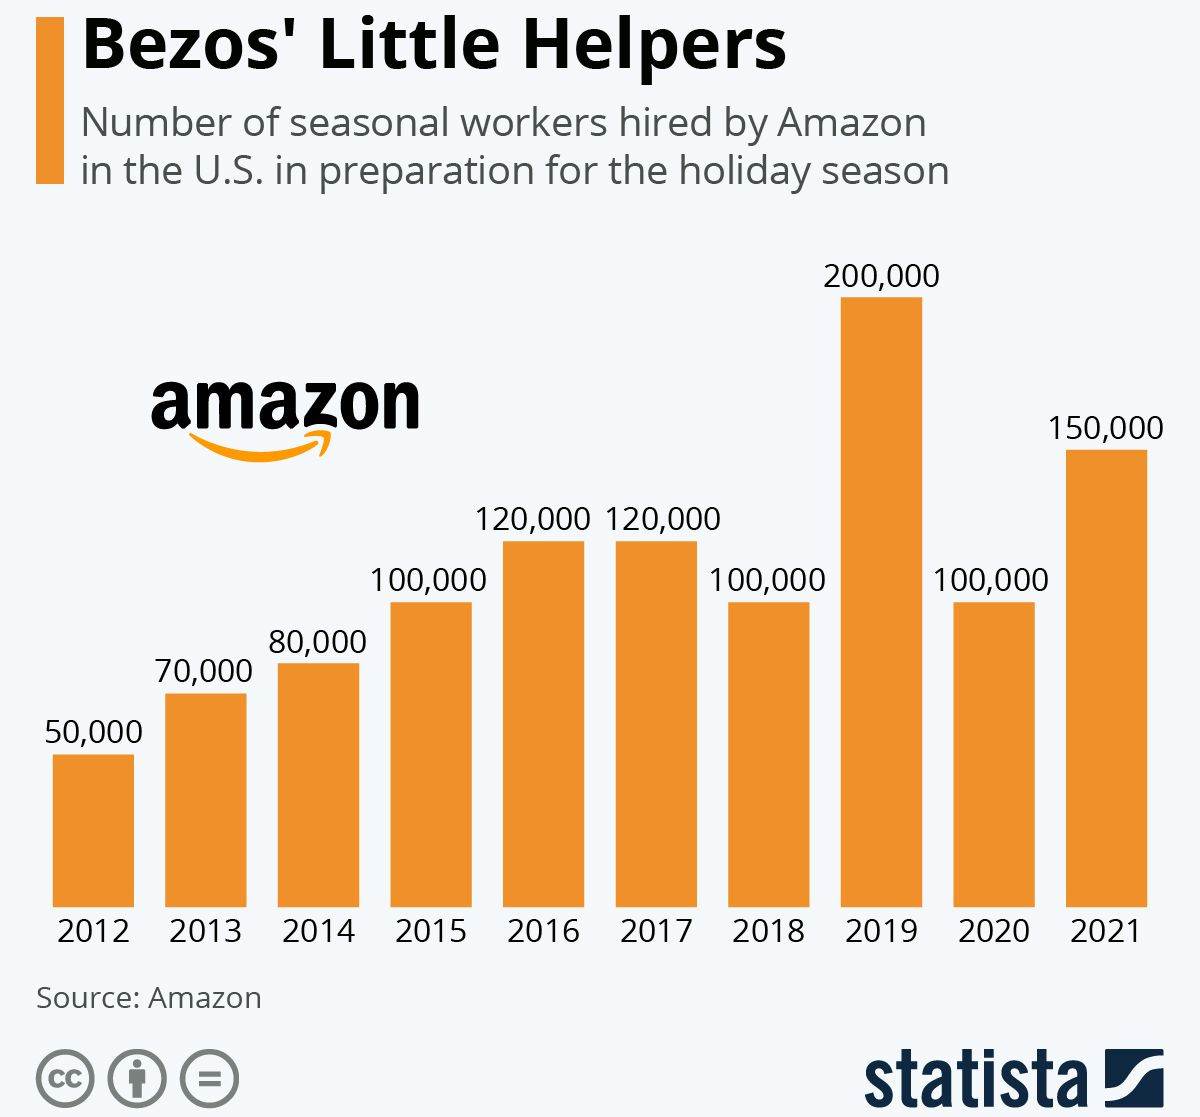  Amazon broj zaposlenih sezonskih radnika.jpg 